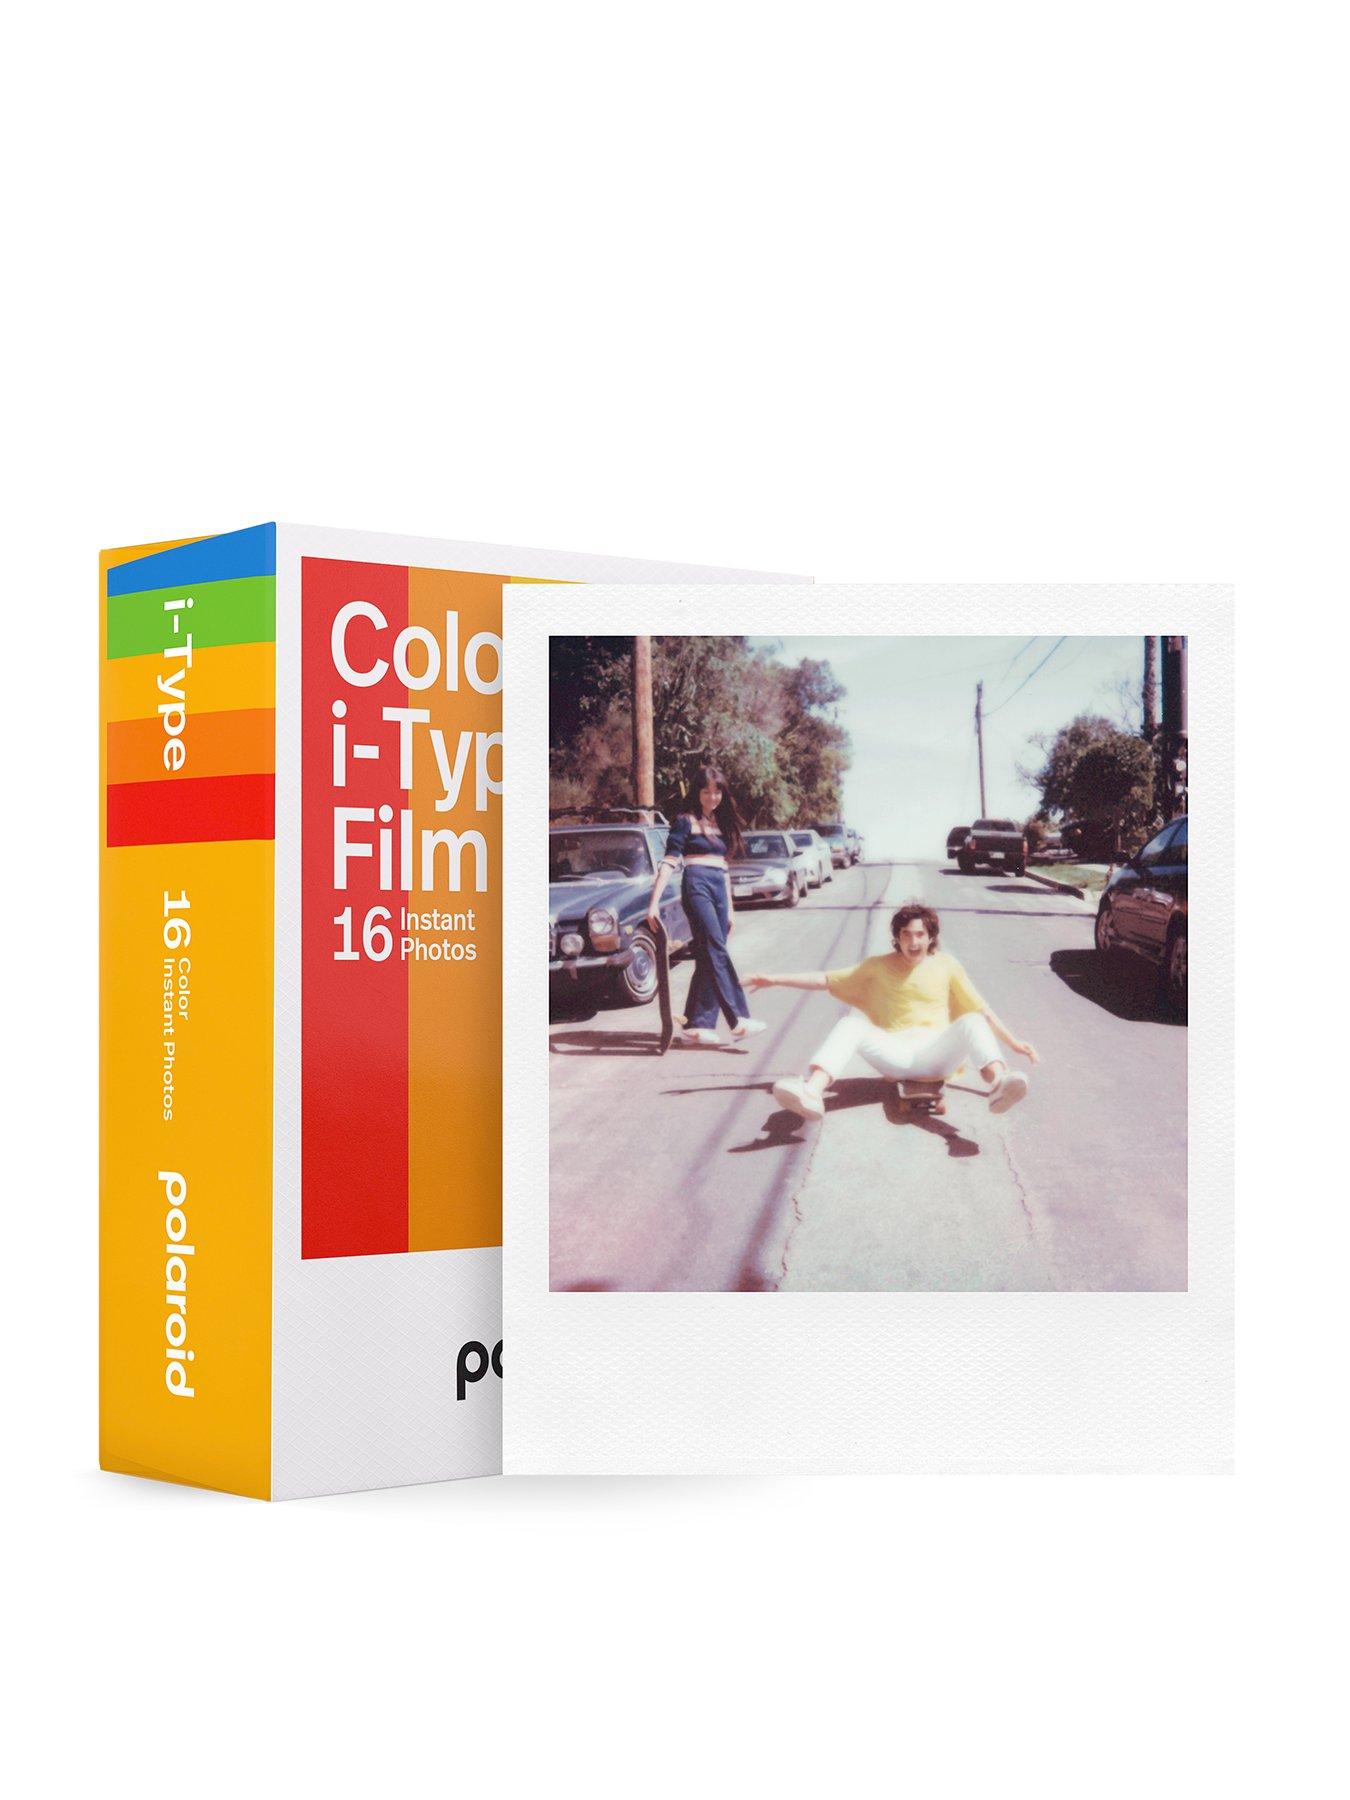 Polaroid Now i-Type Instant Film Camera (White) + Polaroid Color Film Bundle